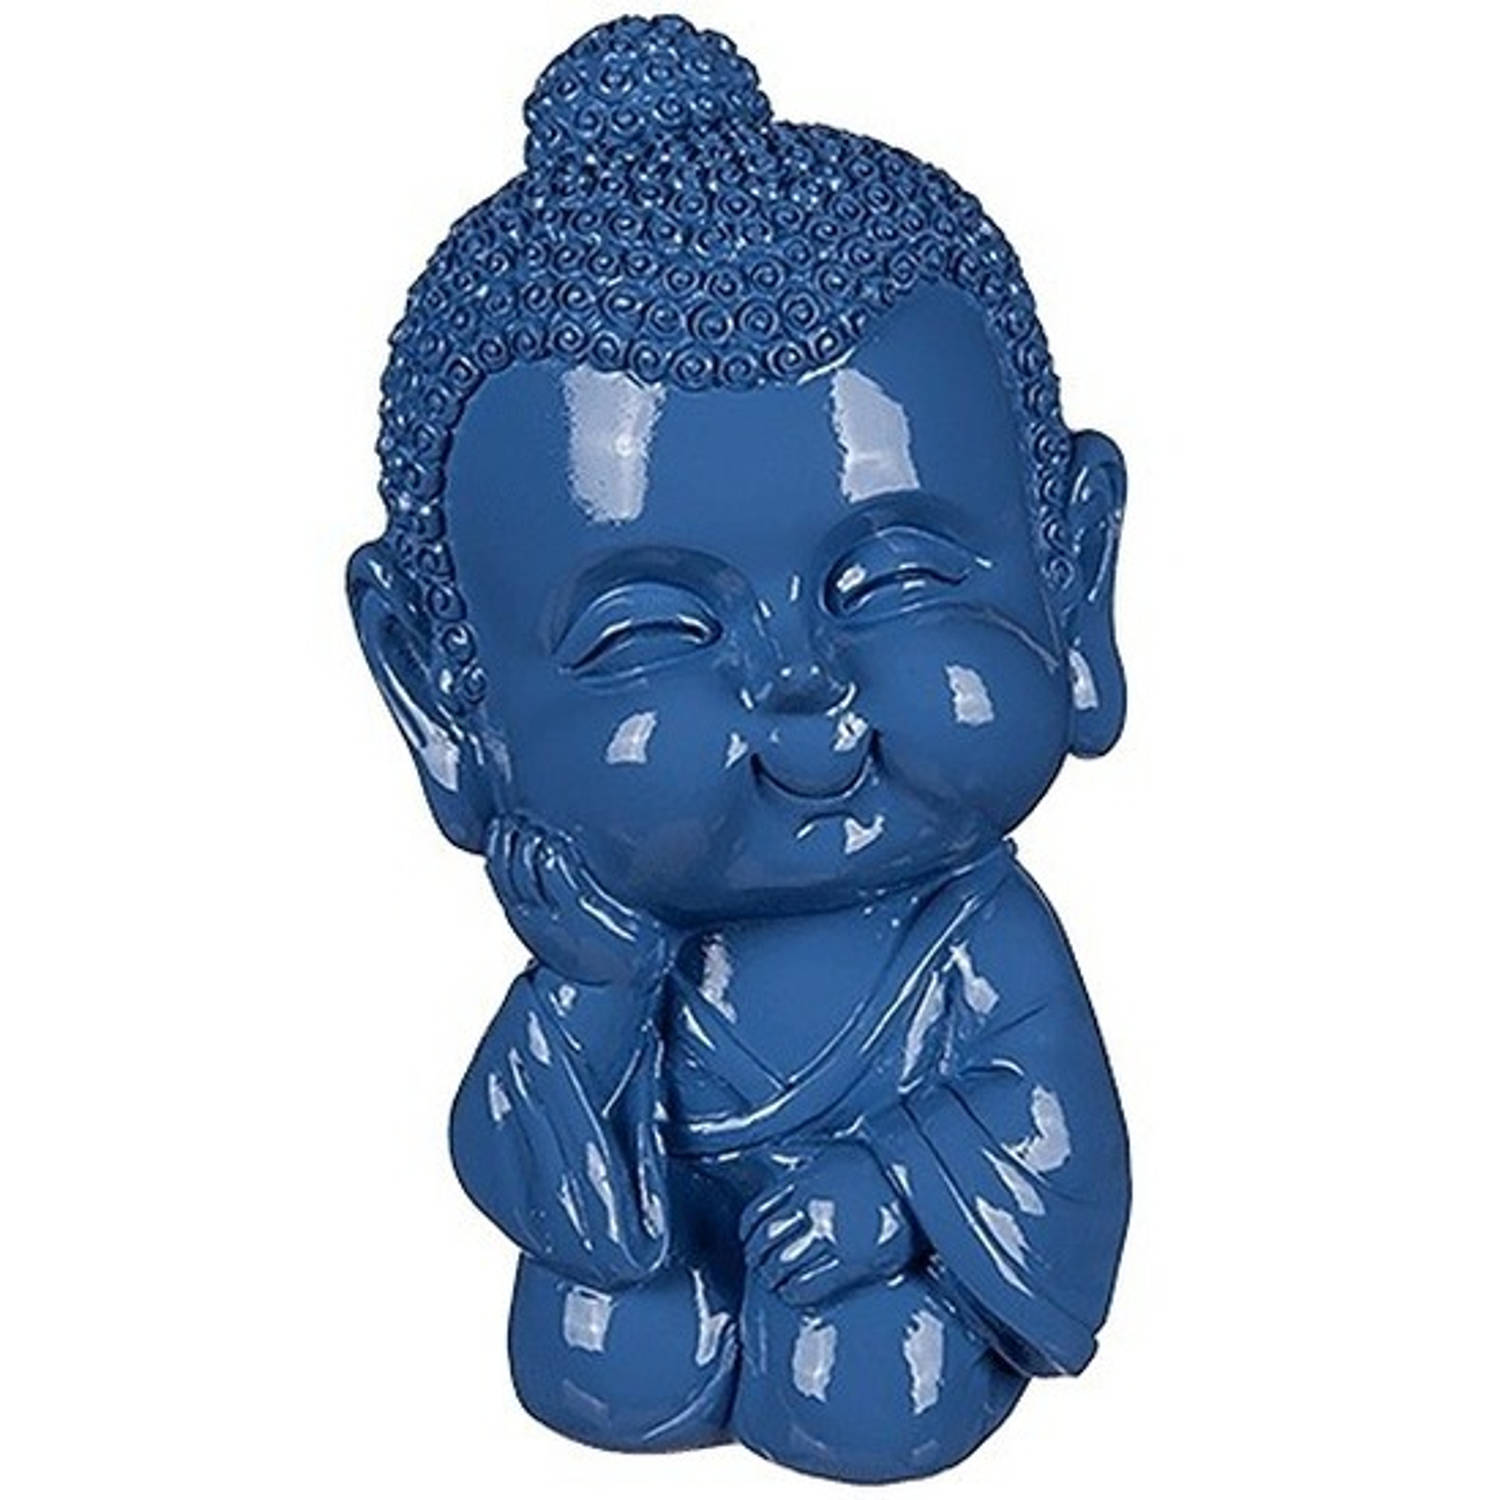 Boeddha spaarpot blauw 13 - Spaarpotten | Blokker